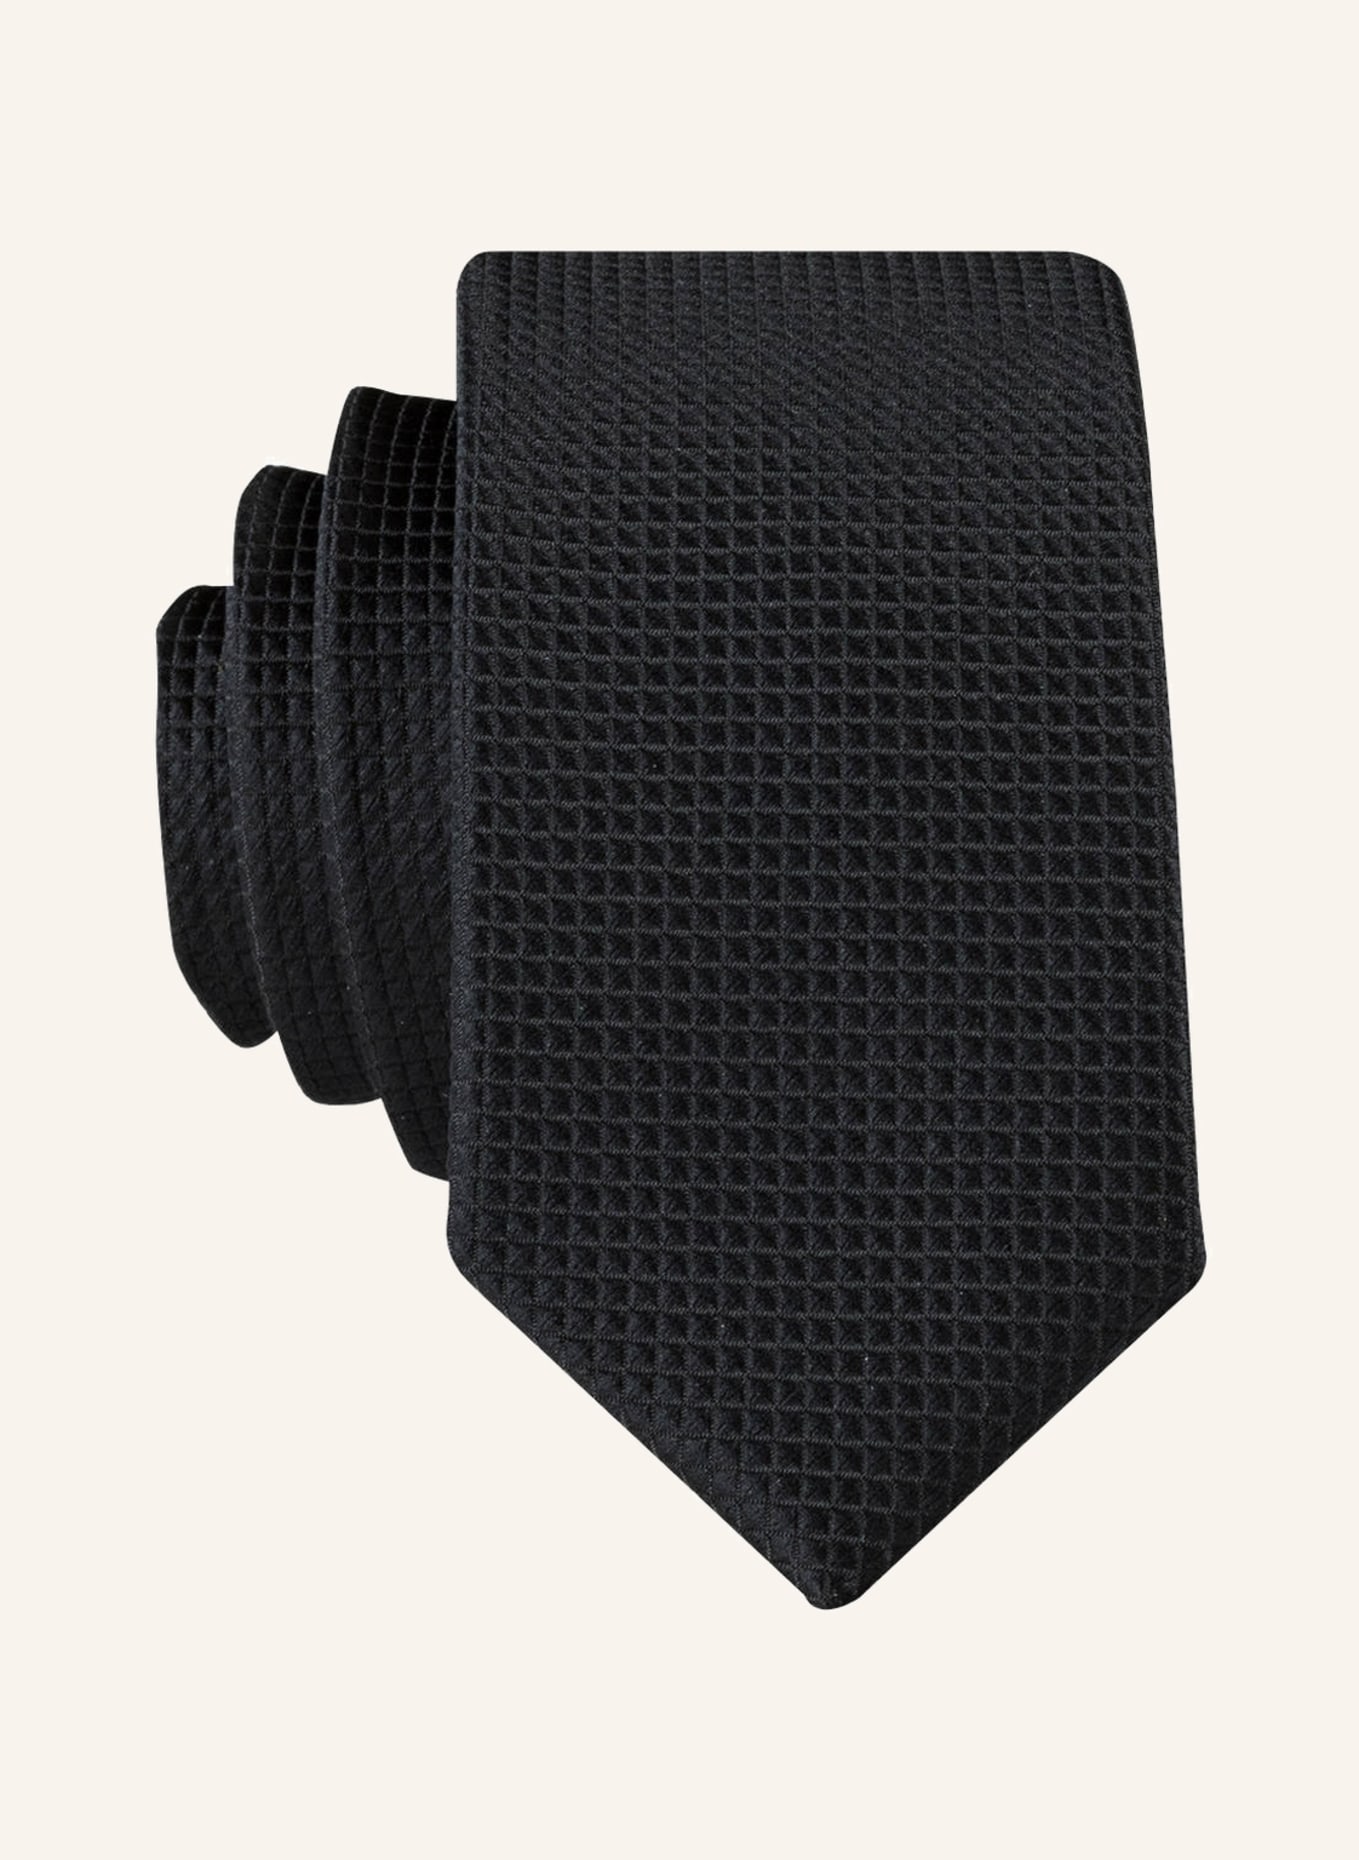 G.O.L. FINEST COLLECTION Krawatte, Farbe: SCHWARZ (Bild 1)